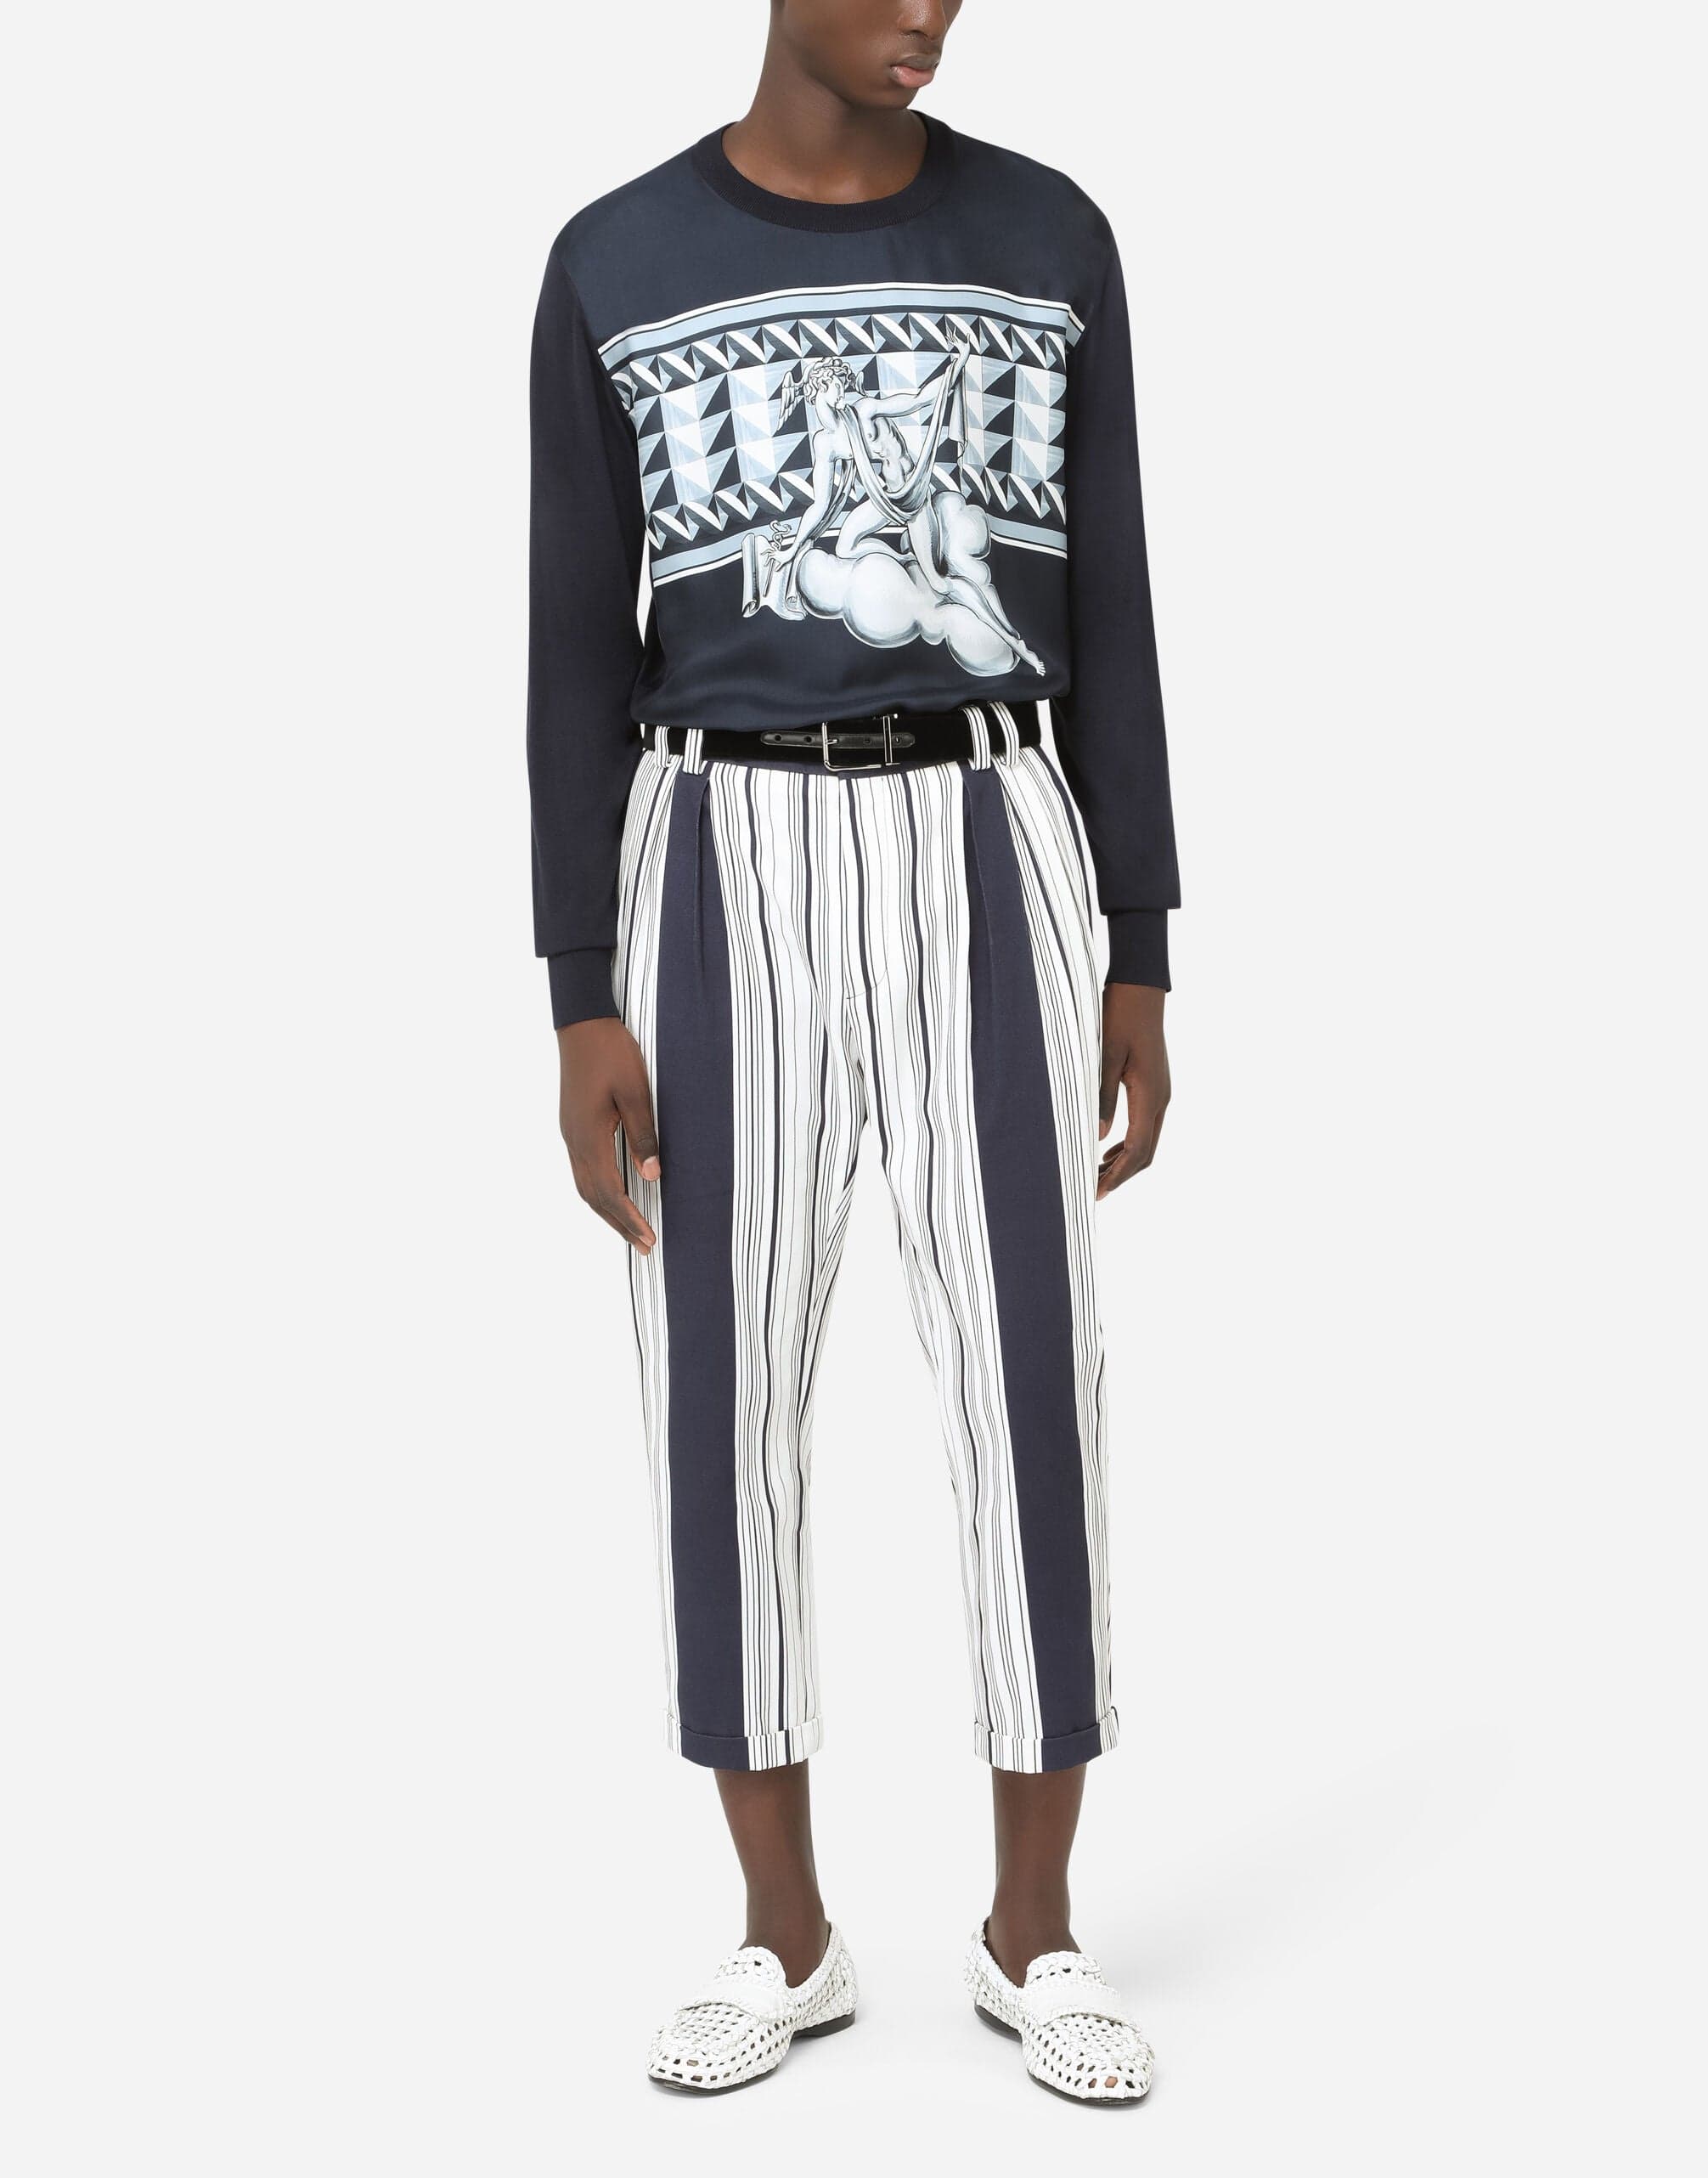 Dolce & Gabbana Striped-Print Cotton Pants